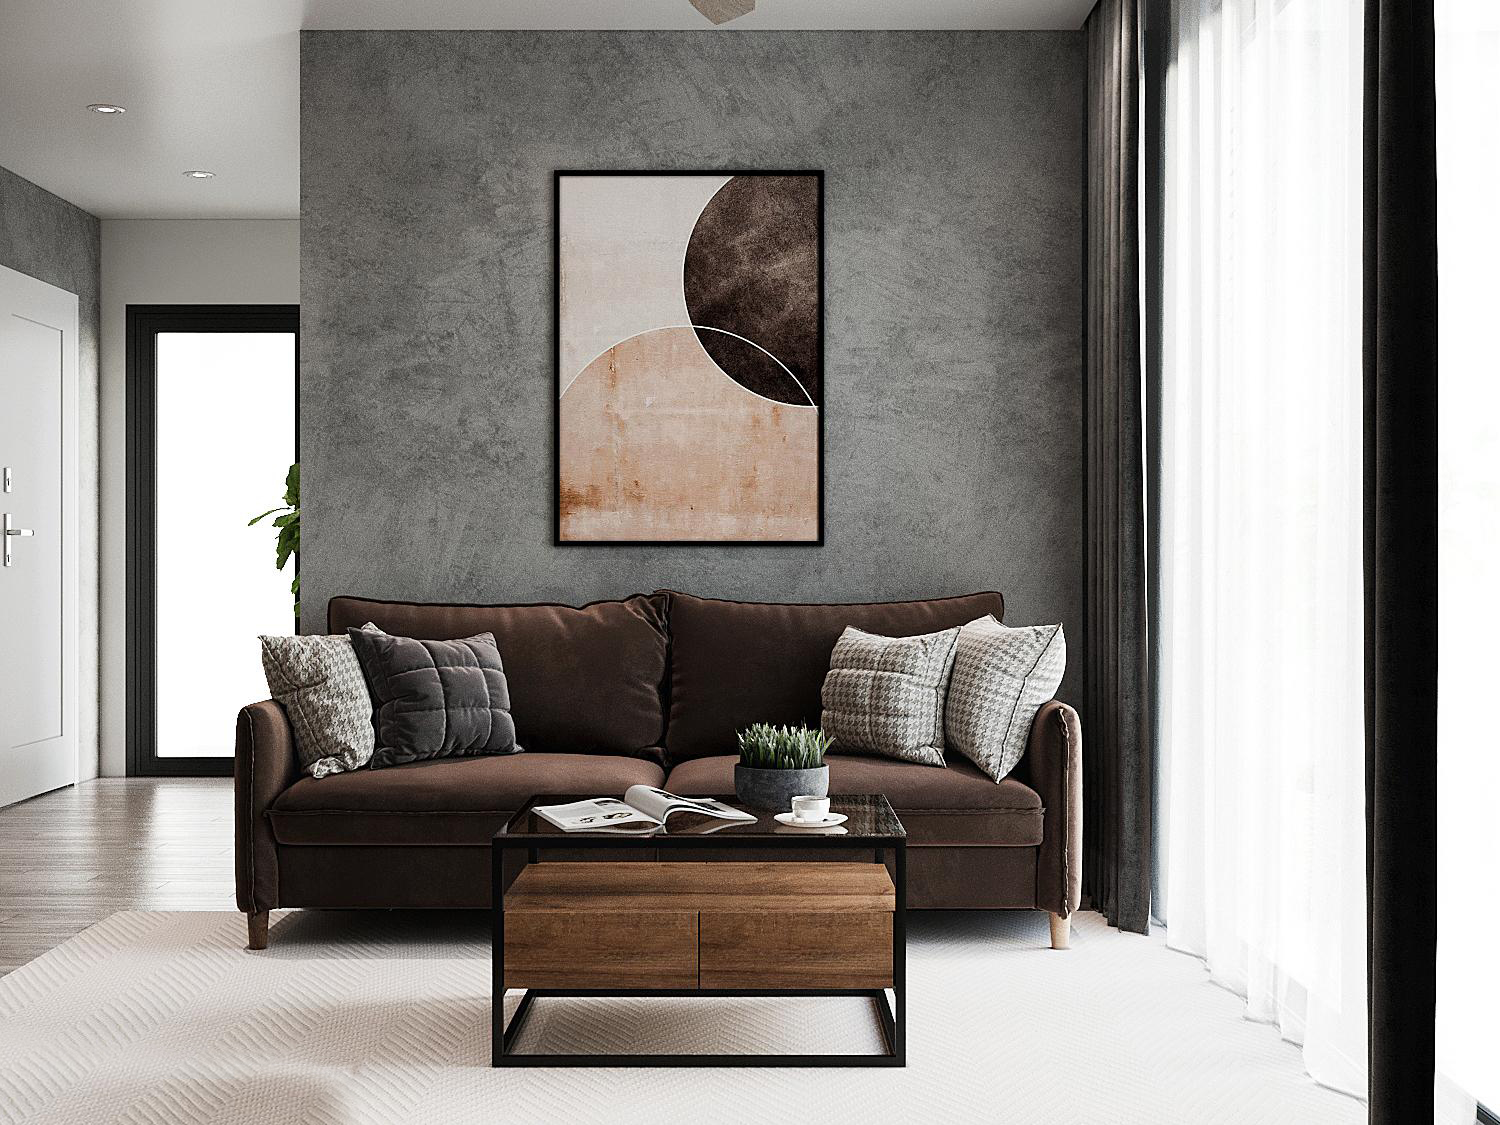 Ghế sofa tông màu nâu trầm kết hợp ăn ý với bàn trà gỗ - kim loại và tranh treo tường nghệ thuật. Tất cả đều nổi bật ở mức vừa phải trên phông nền màu xám bê tông chủ đạo.